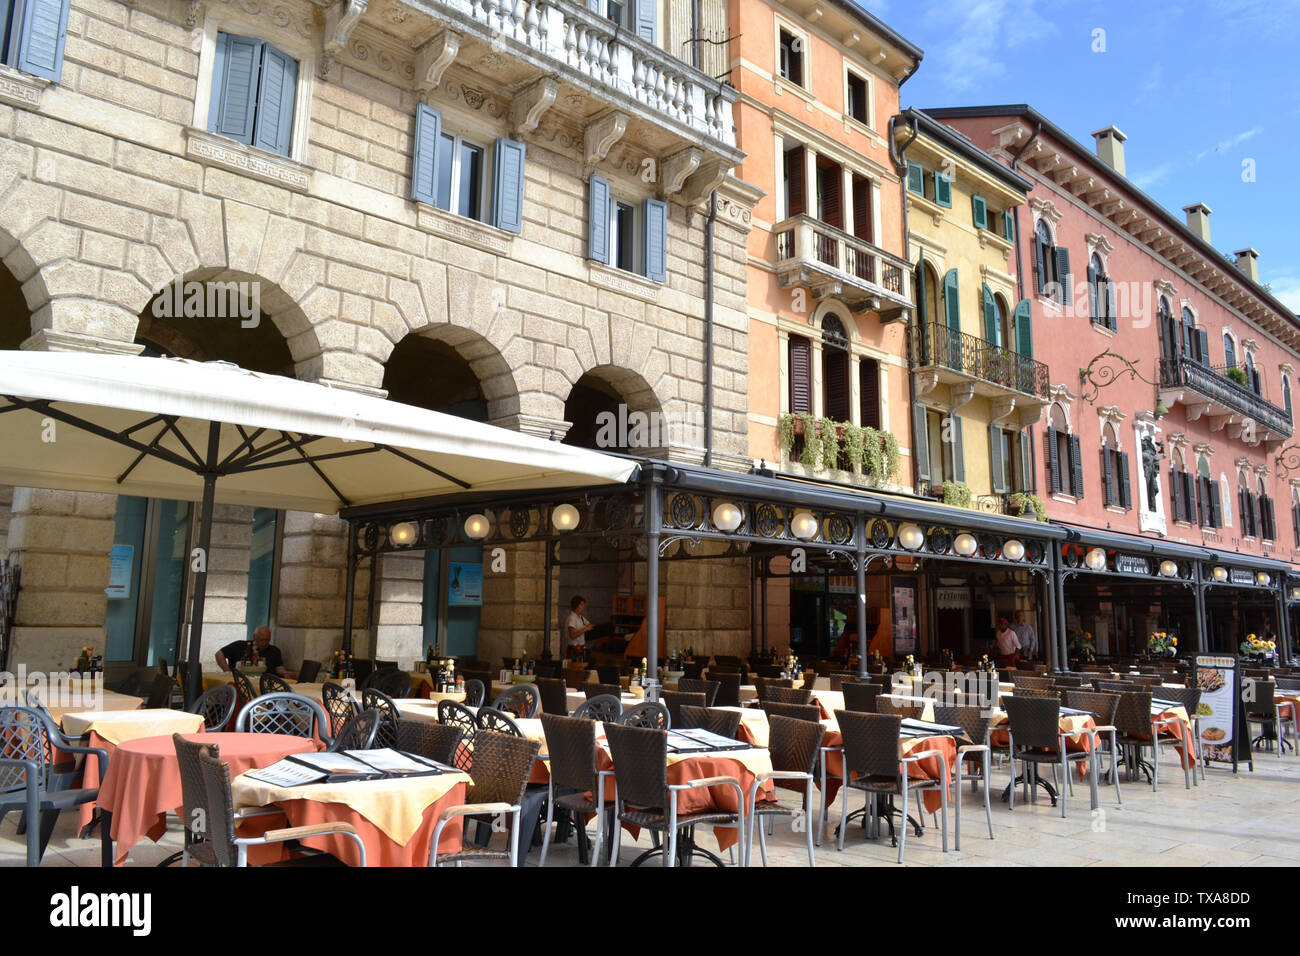 Verona/Italia - Mayo 9, 2015: restaurantes y cafés de la Piazza delle Erbe de Verona. Foto de stock